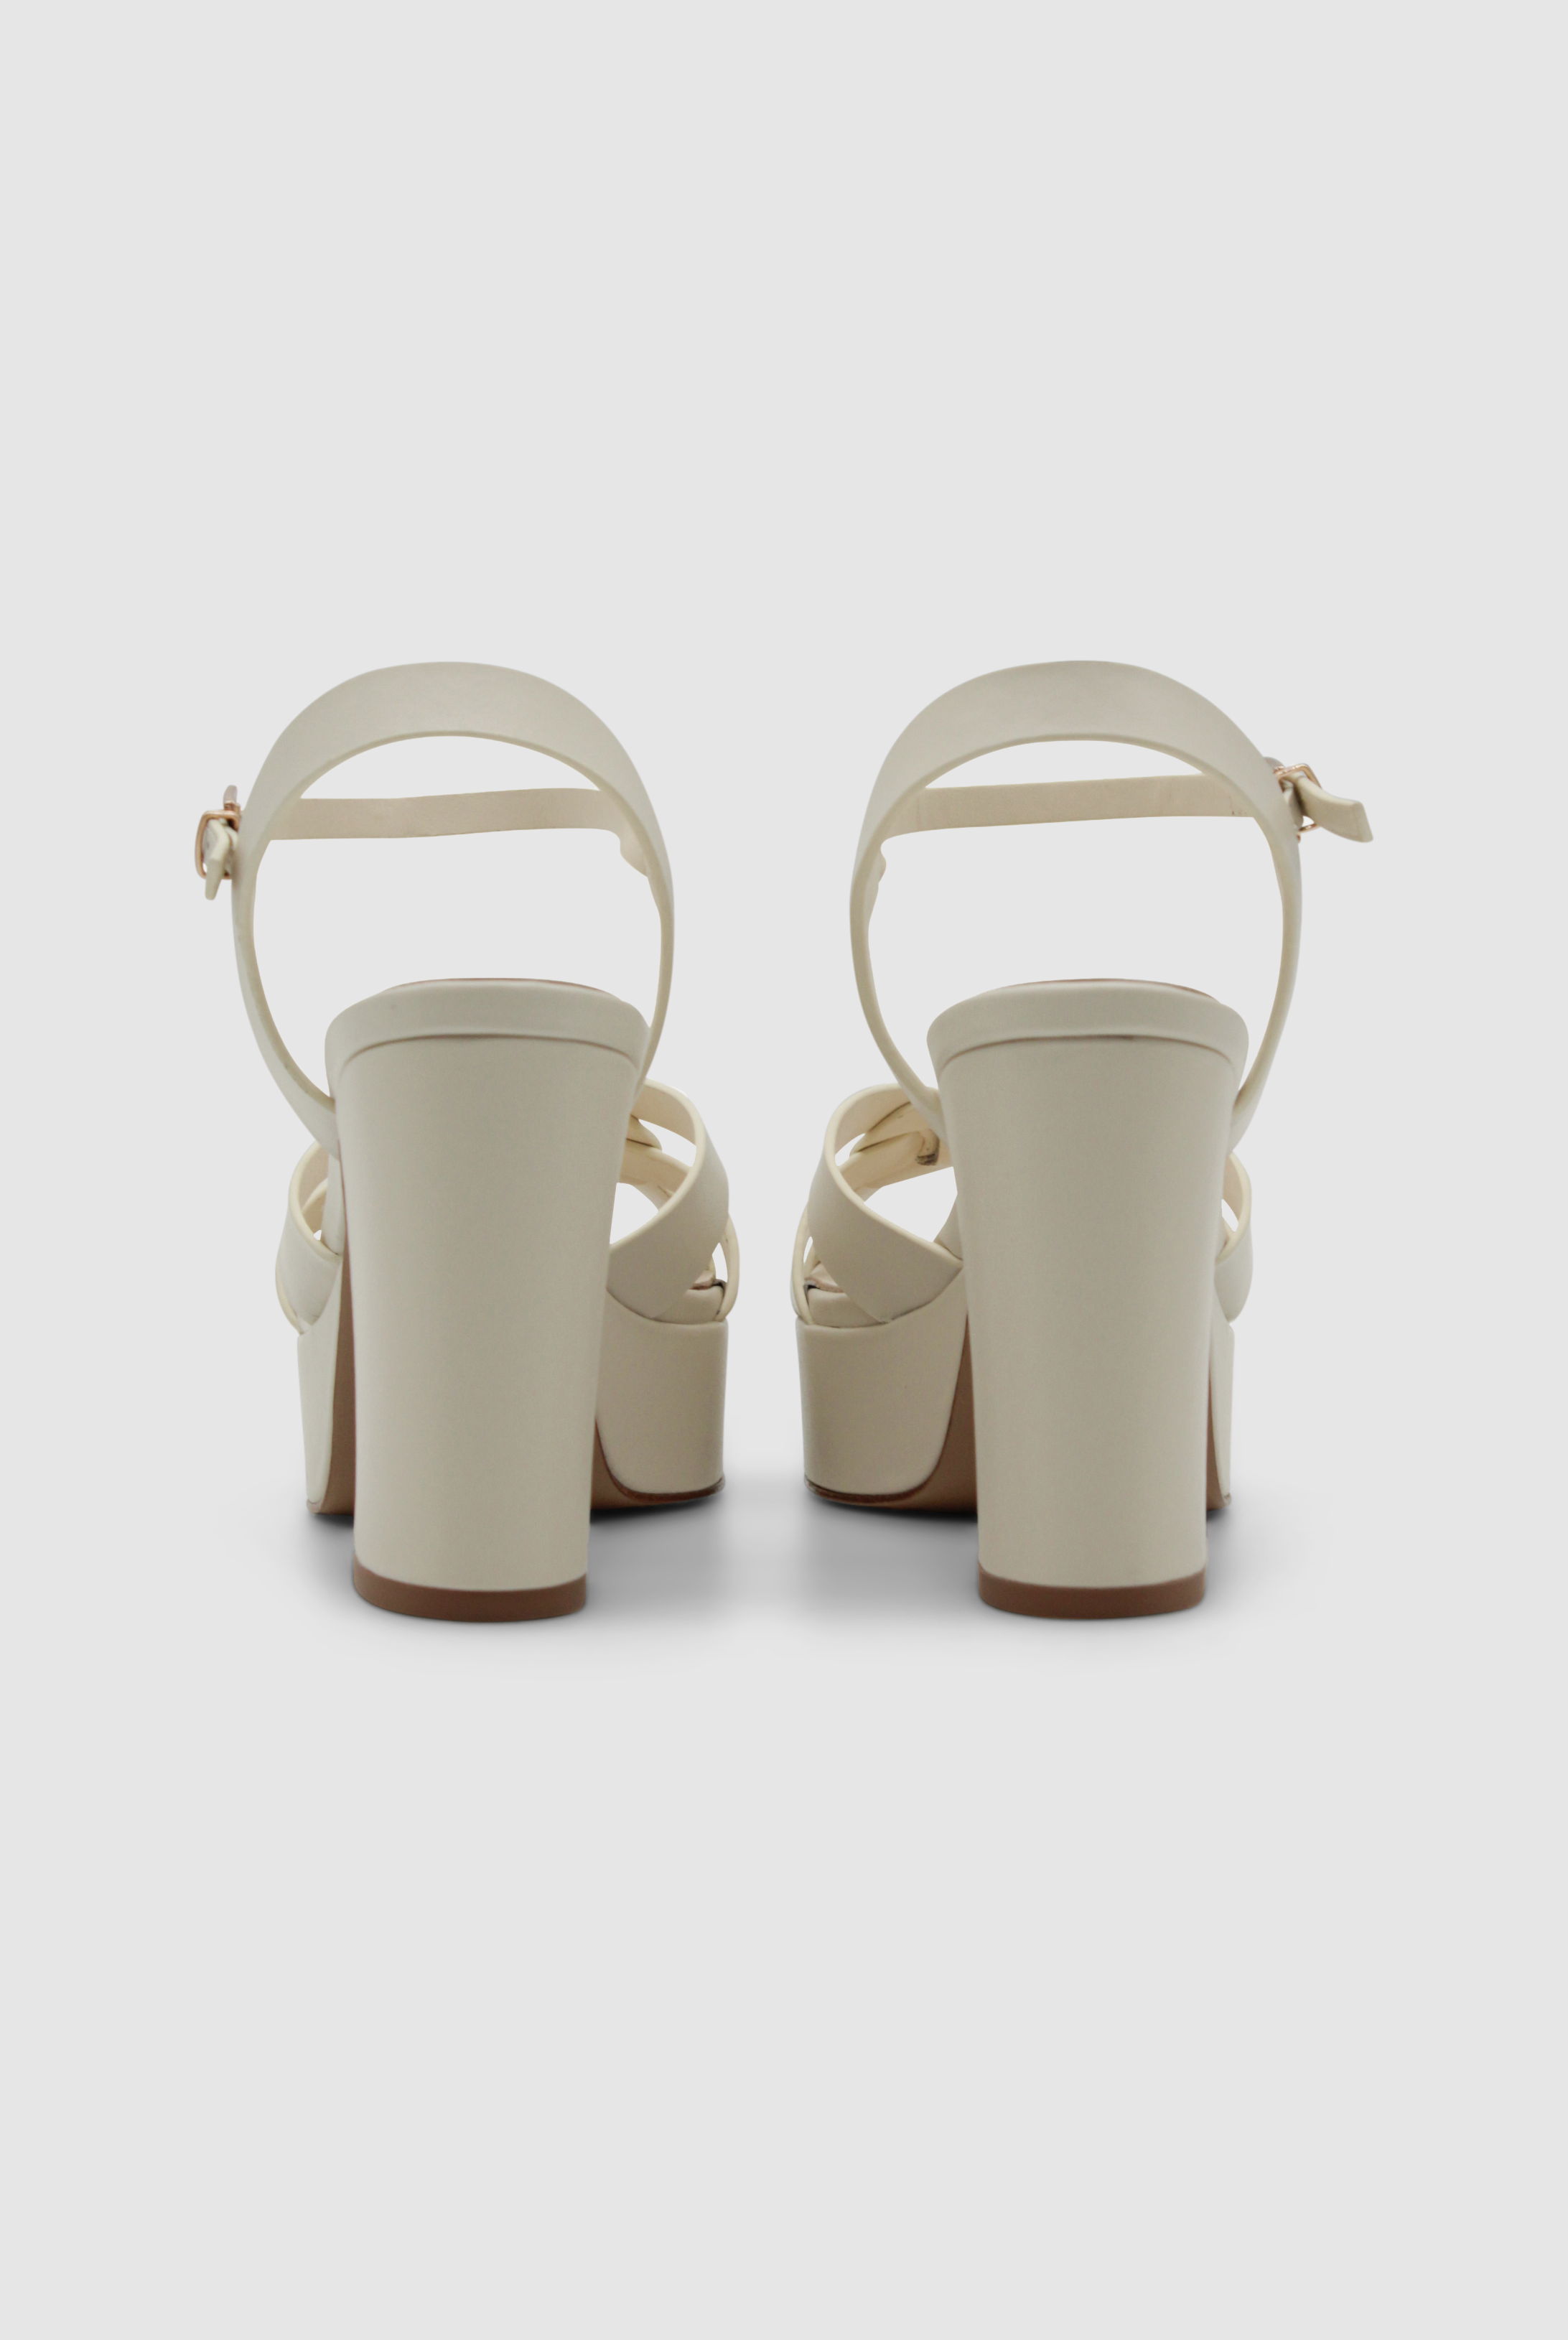 Sandalen von Lola Cruz mit einer Plateausohle und geflochtenen Riemen an den Zehen. Die Schuhe haben einen Riemen an der Ferse und haben einen hohen Absatz